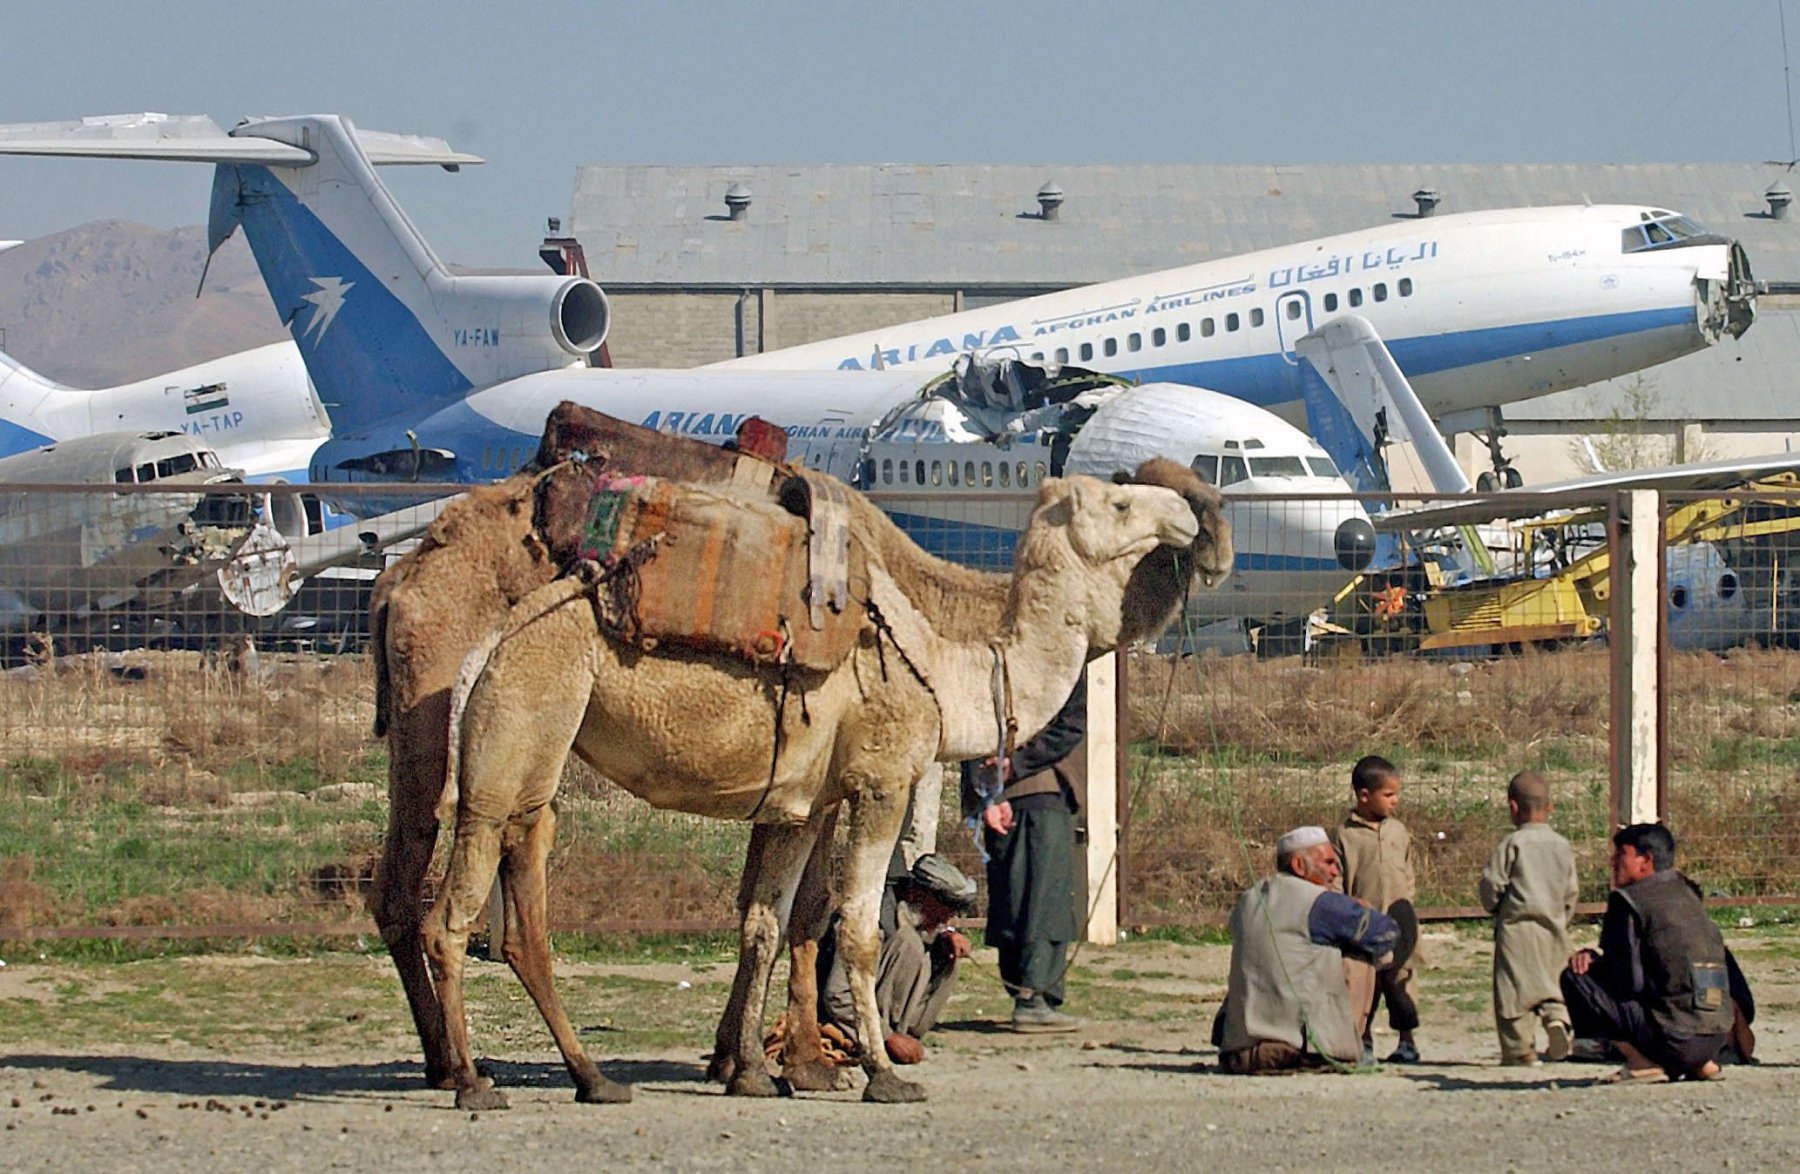 Vor zerstörten Passagiermaschinen der ehemaligen staatlichen afghanischen Fluglinie "Ariana" warten Männer am internationalen Flughafen von Kabul auf Kunden für ihre Lastenkamele. Nach den verheerenden Kriegszerstörungen verfügt "Ariana" nur noch über zwei einsatzbereite Flugzeuge. Weite Teile des Flughafens gelten als minenverseucht. Foto: Boris Roessler/dpa